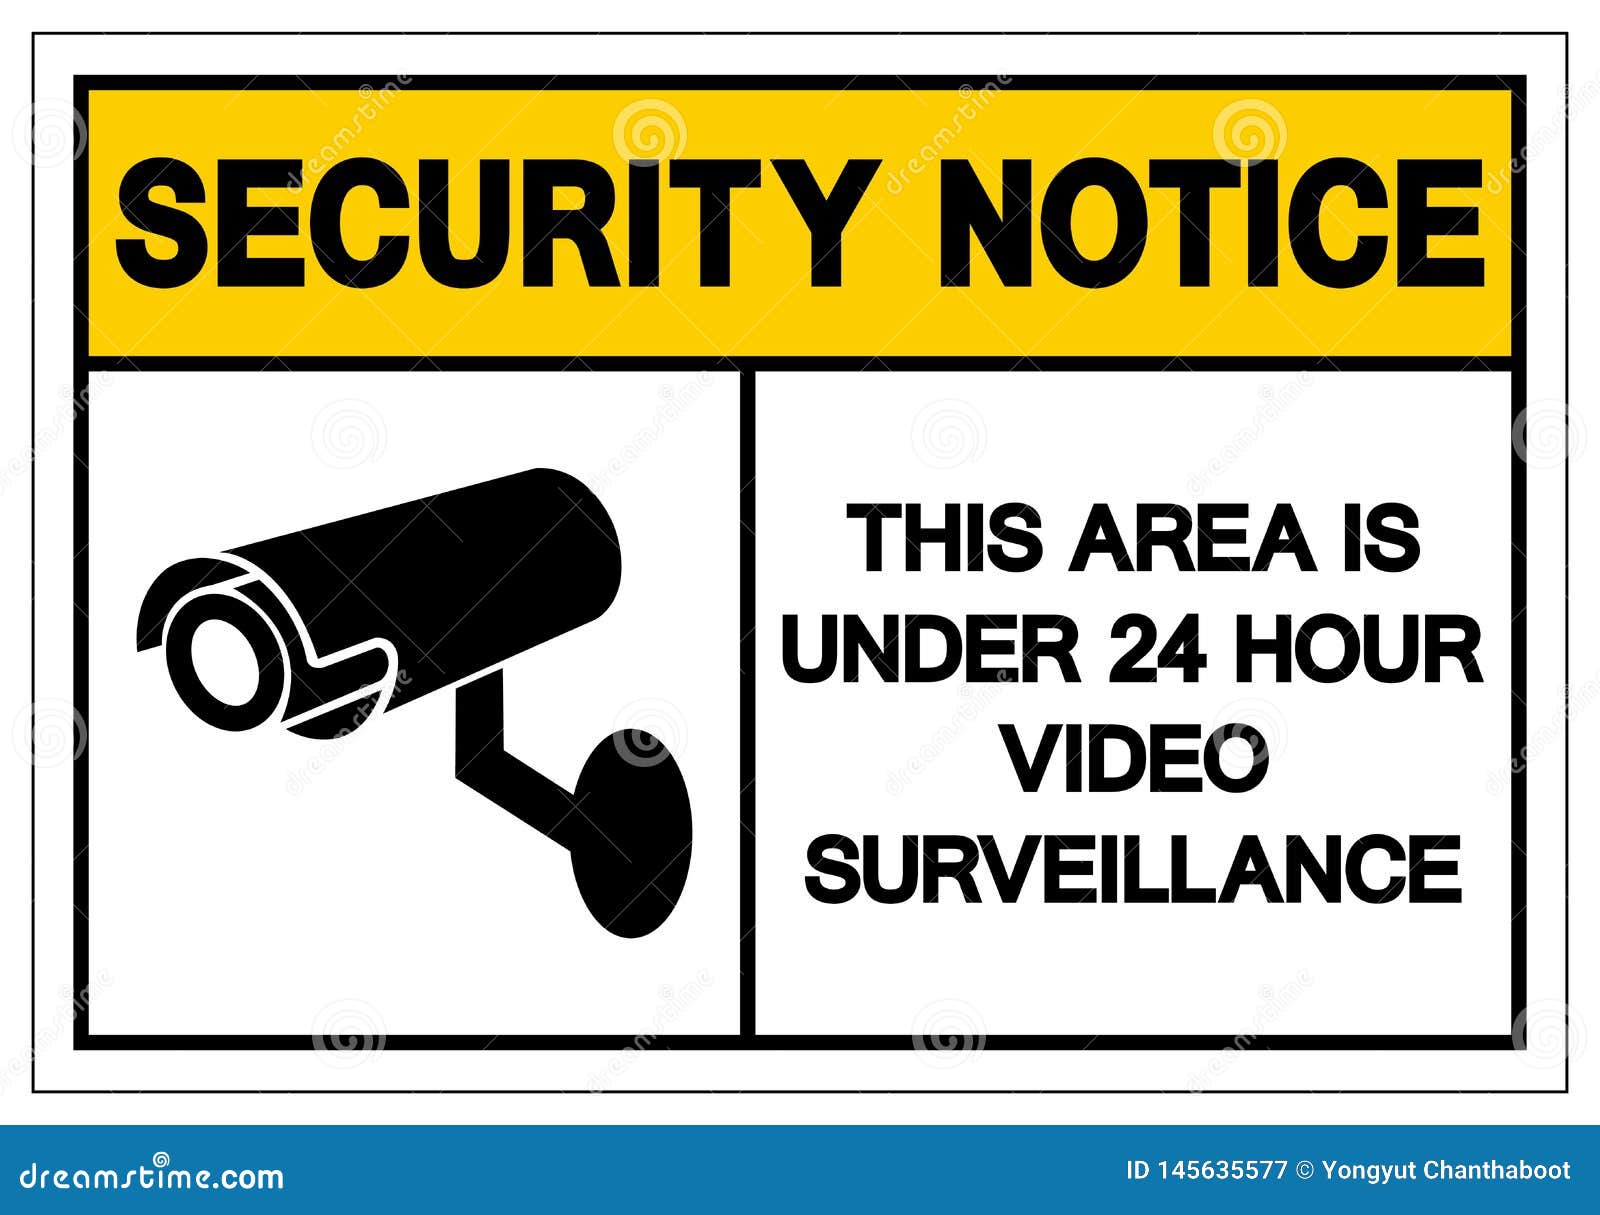 Kiểm soát an ninh và giám sát động thái của nhà bạn bất cứ lúc nào với giám sát video 24 giờ. Chỉ cần một kết nối internet, bạn sẽ yên tâm chống trộm, bảo vệ gia đình và tài sản của mình.